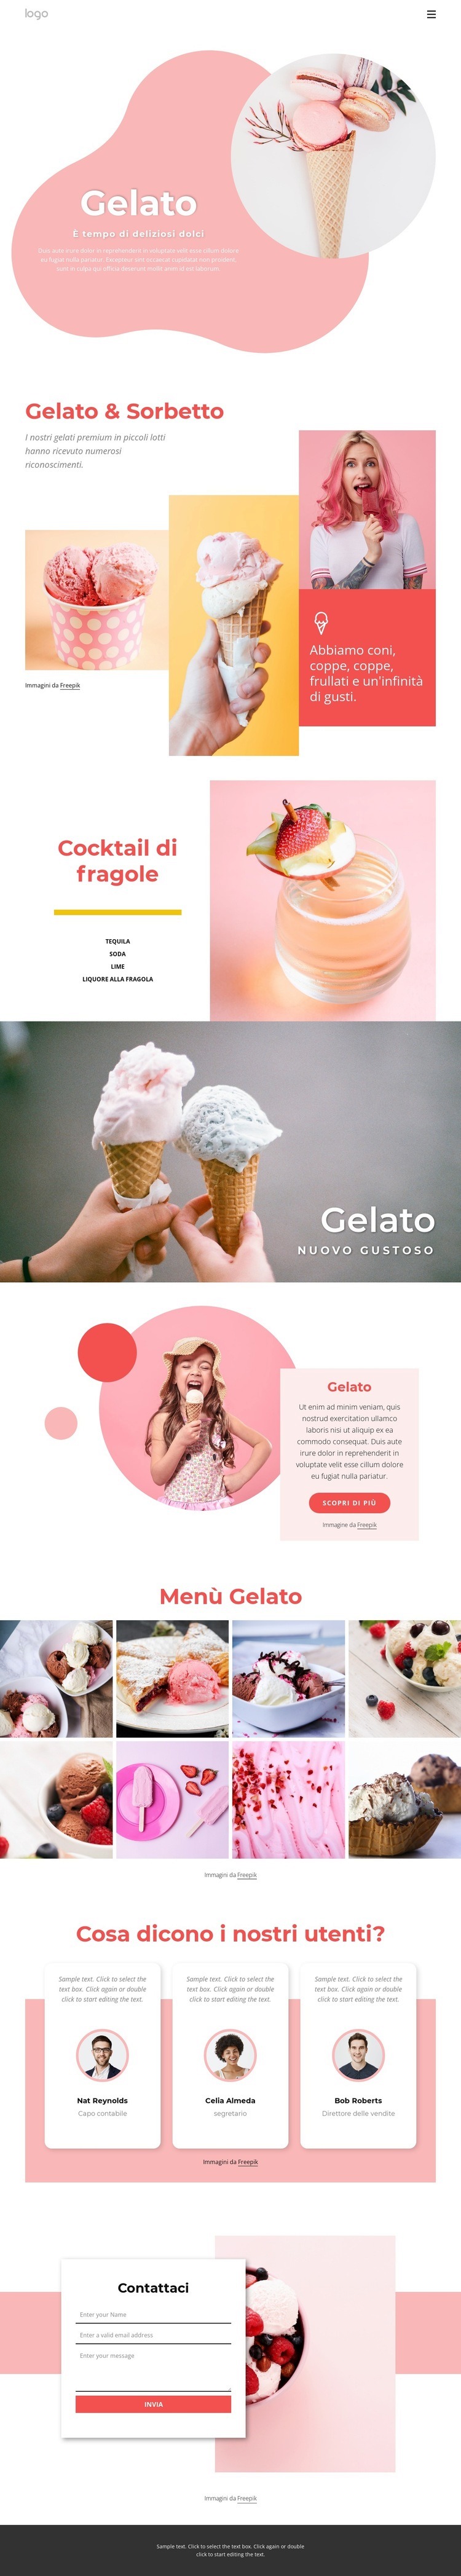 Gelato e Ffrozen yogurt Progettazione di siti web